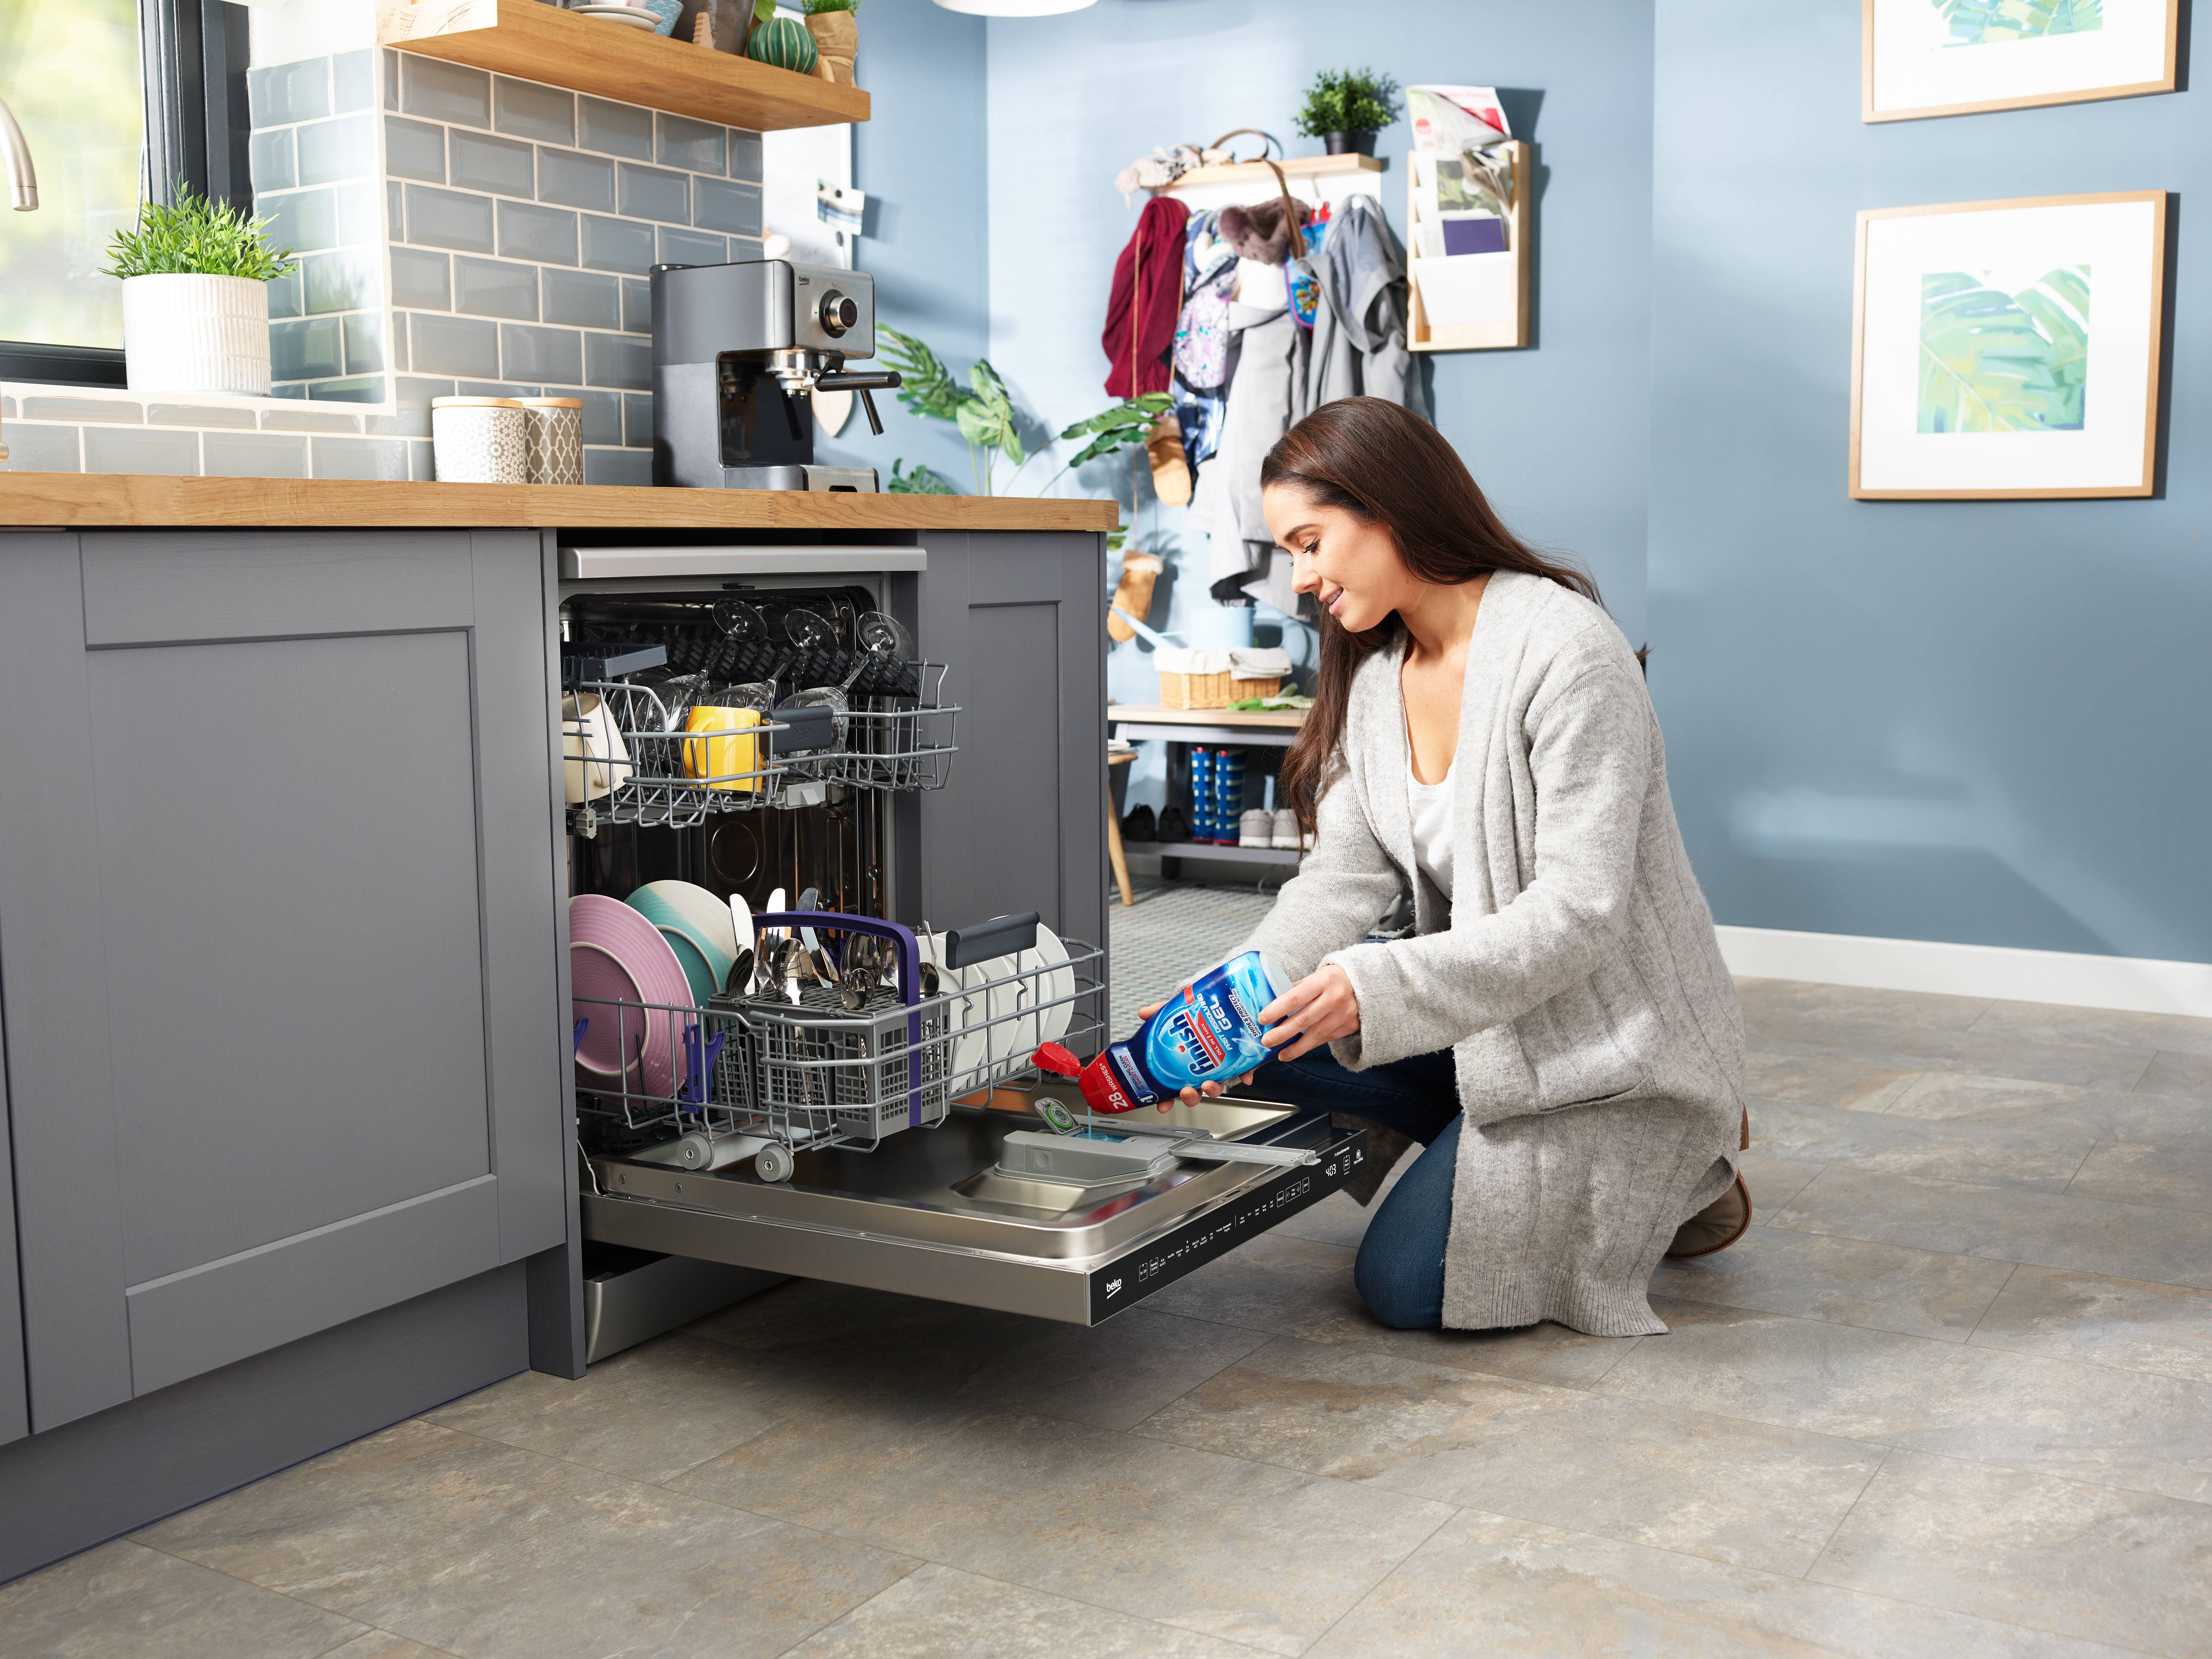 Как выбрать посудомоечную машину для дома - что следует оценить? советы и рекомендации